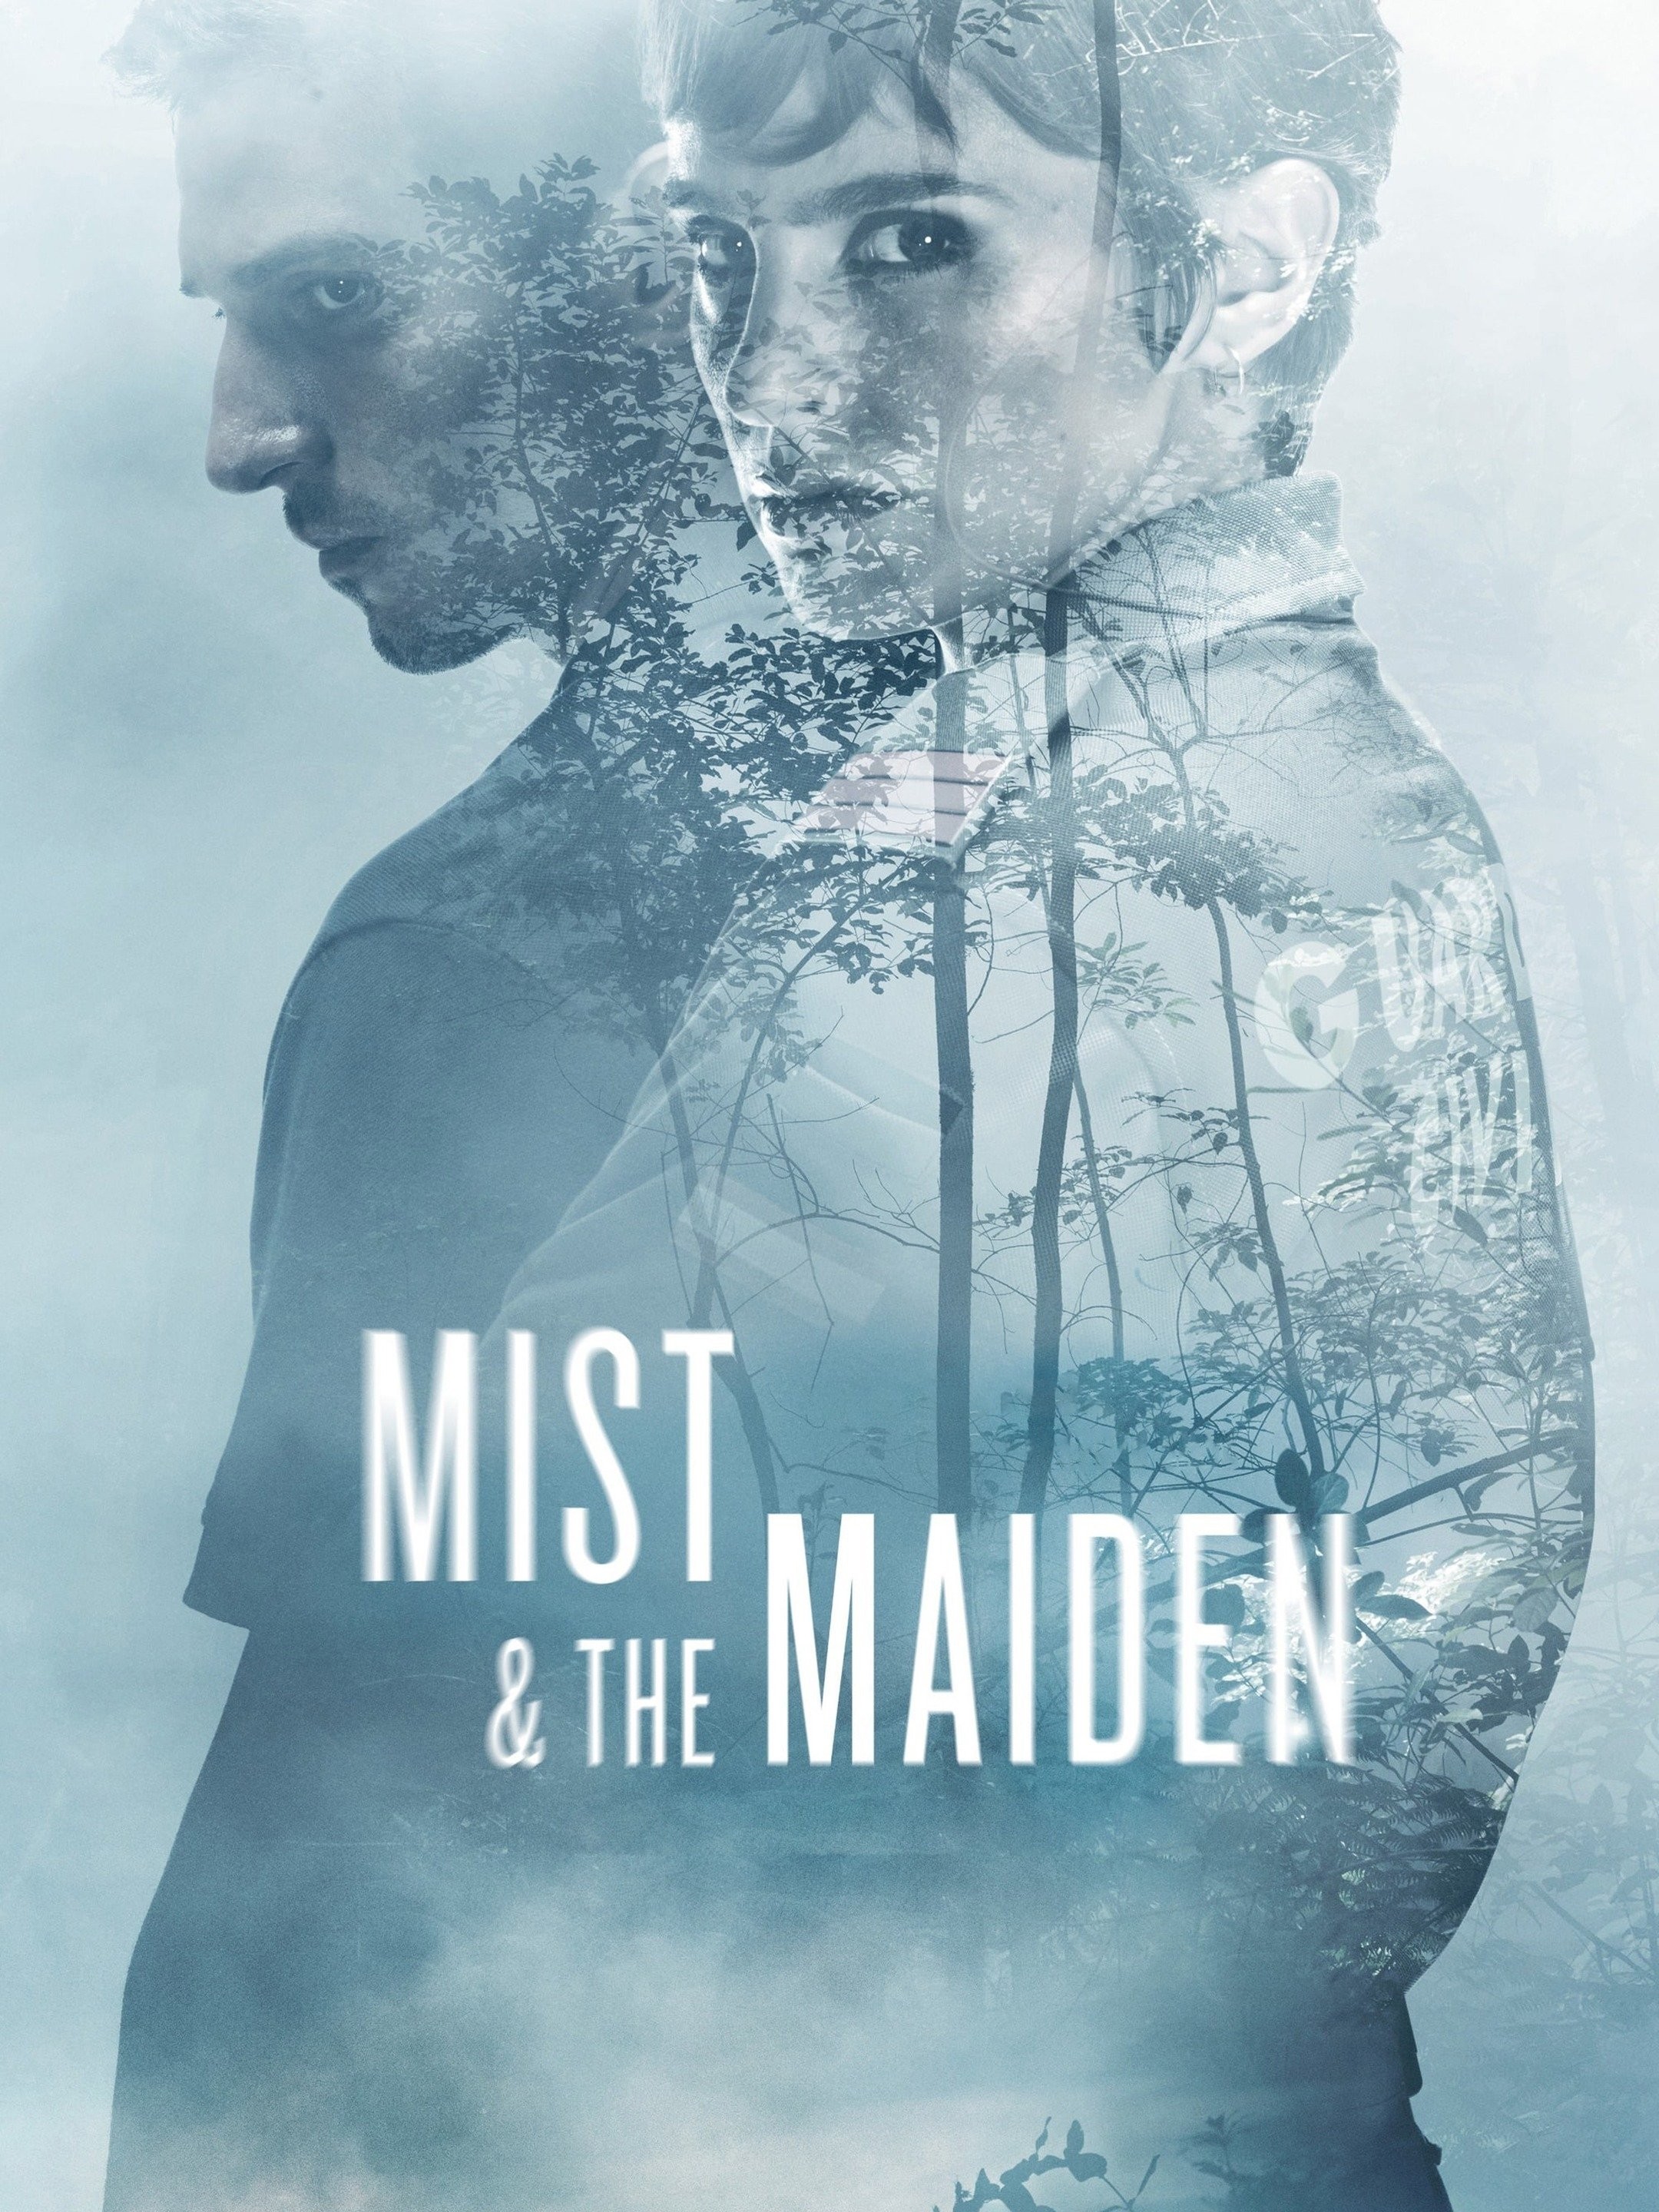 Night Maiden's Mist